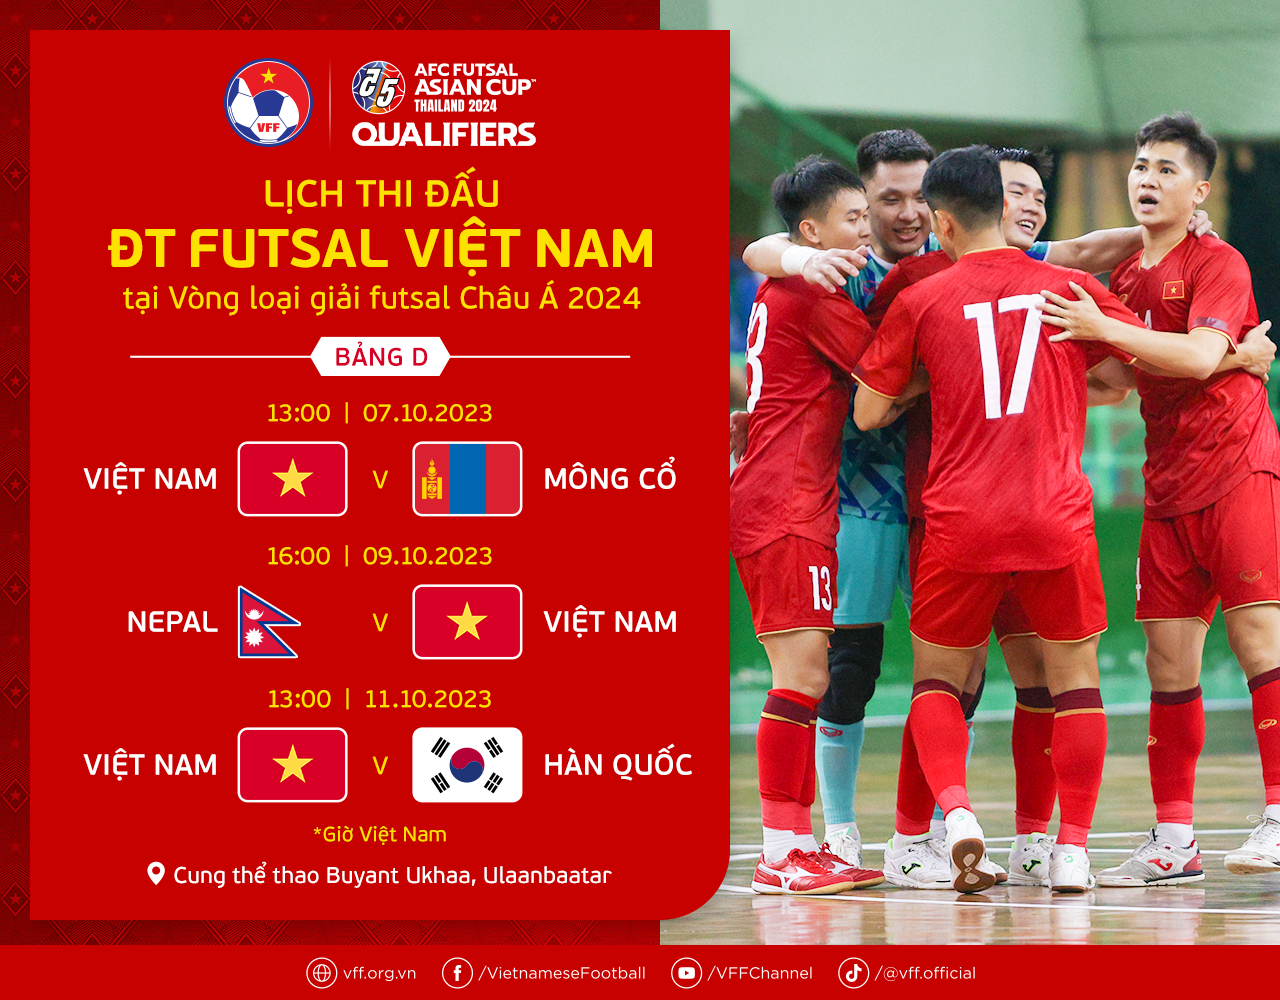 Lịch thi đấu vòng loại futsal châu Á 2024, lịch thi đấu futsal Việt Nam  - Ảnh 2.